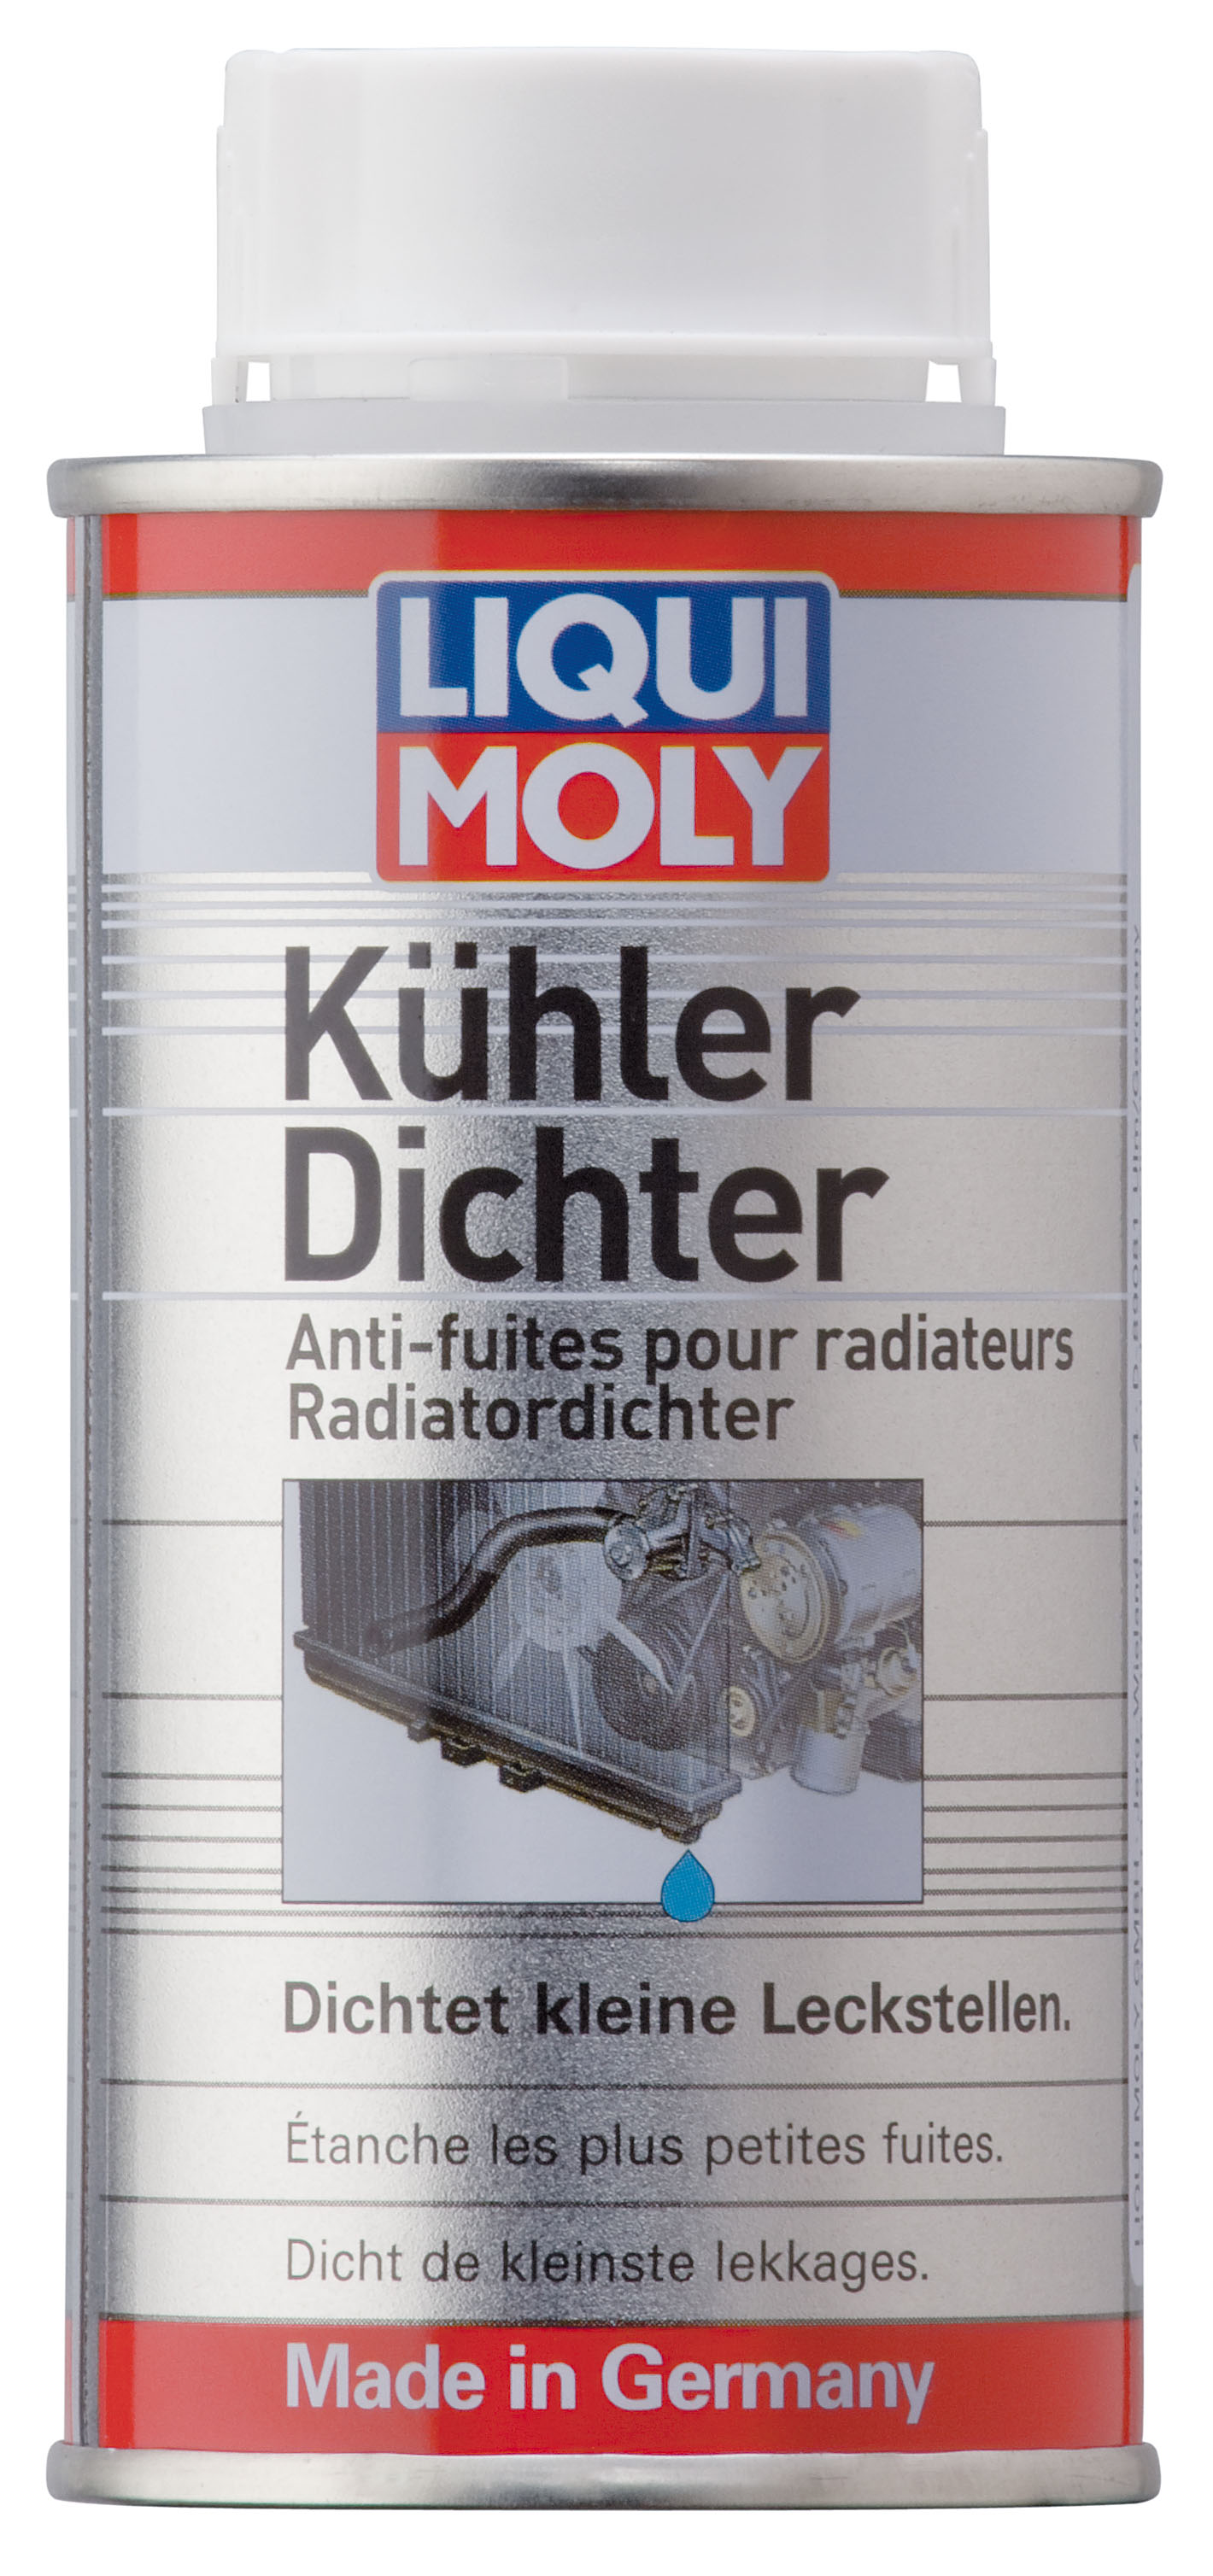 Liqui Moly 3043 Motorbike/Motorrad Kühler Dichter 125ml